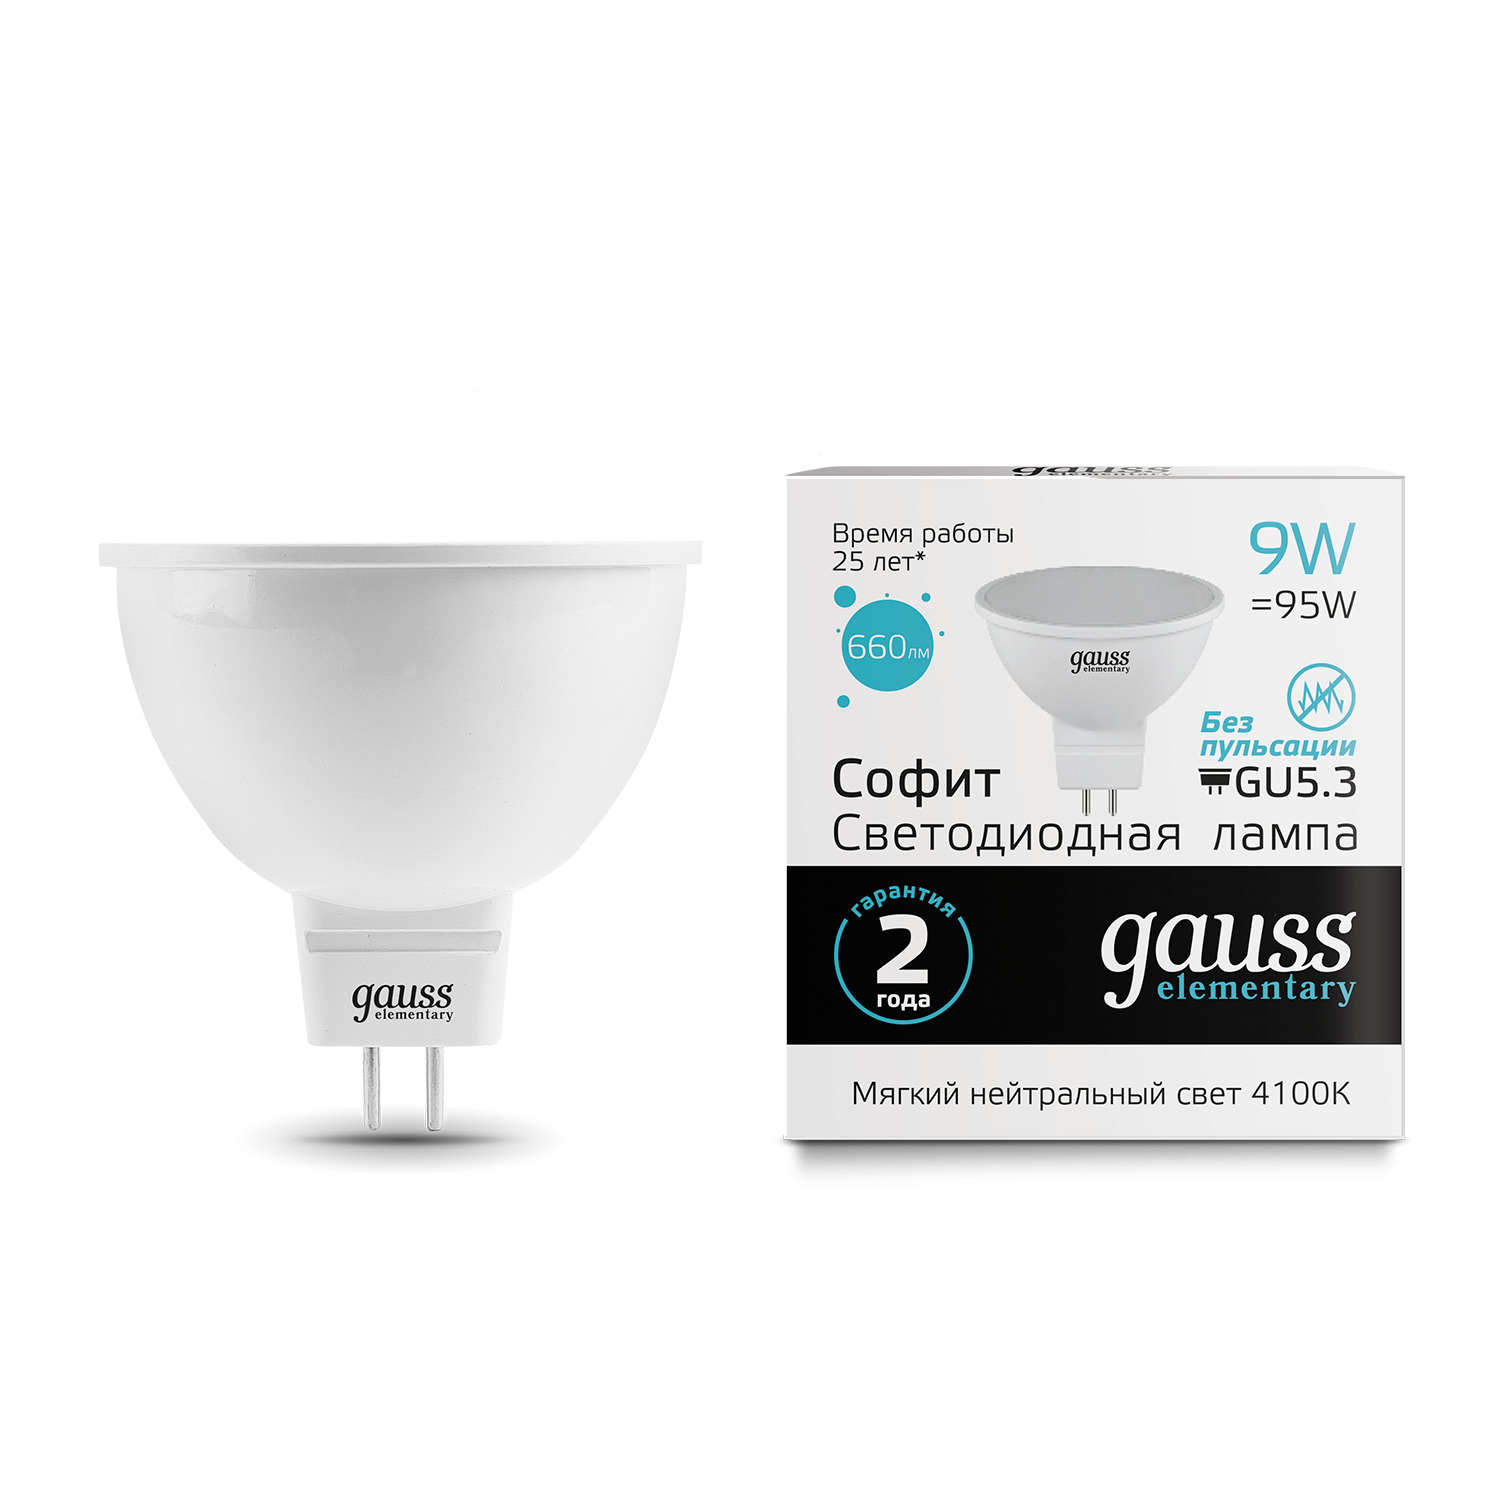 Лампа Gauss LED Elementary MR16 GU5.3 9W 4100K лампочка gauss mr16 101505207